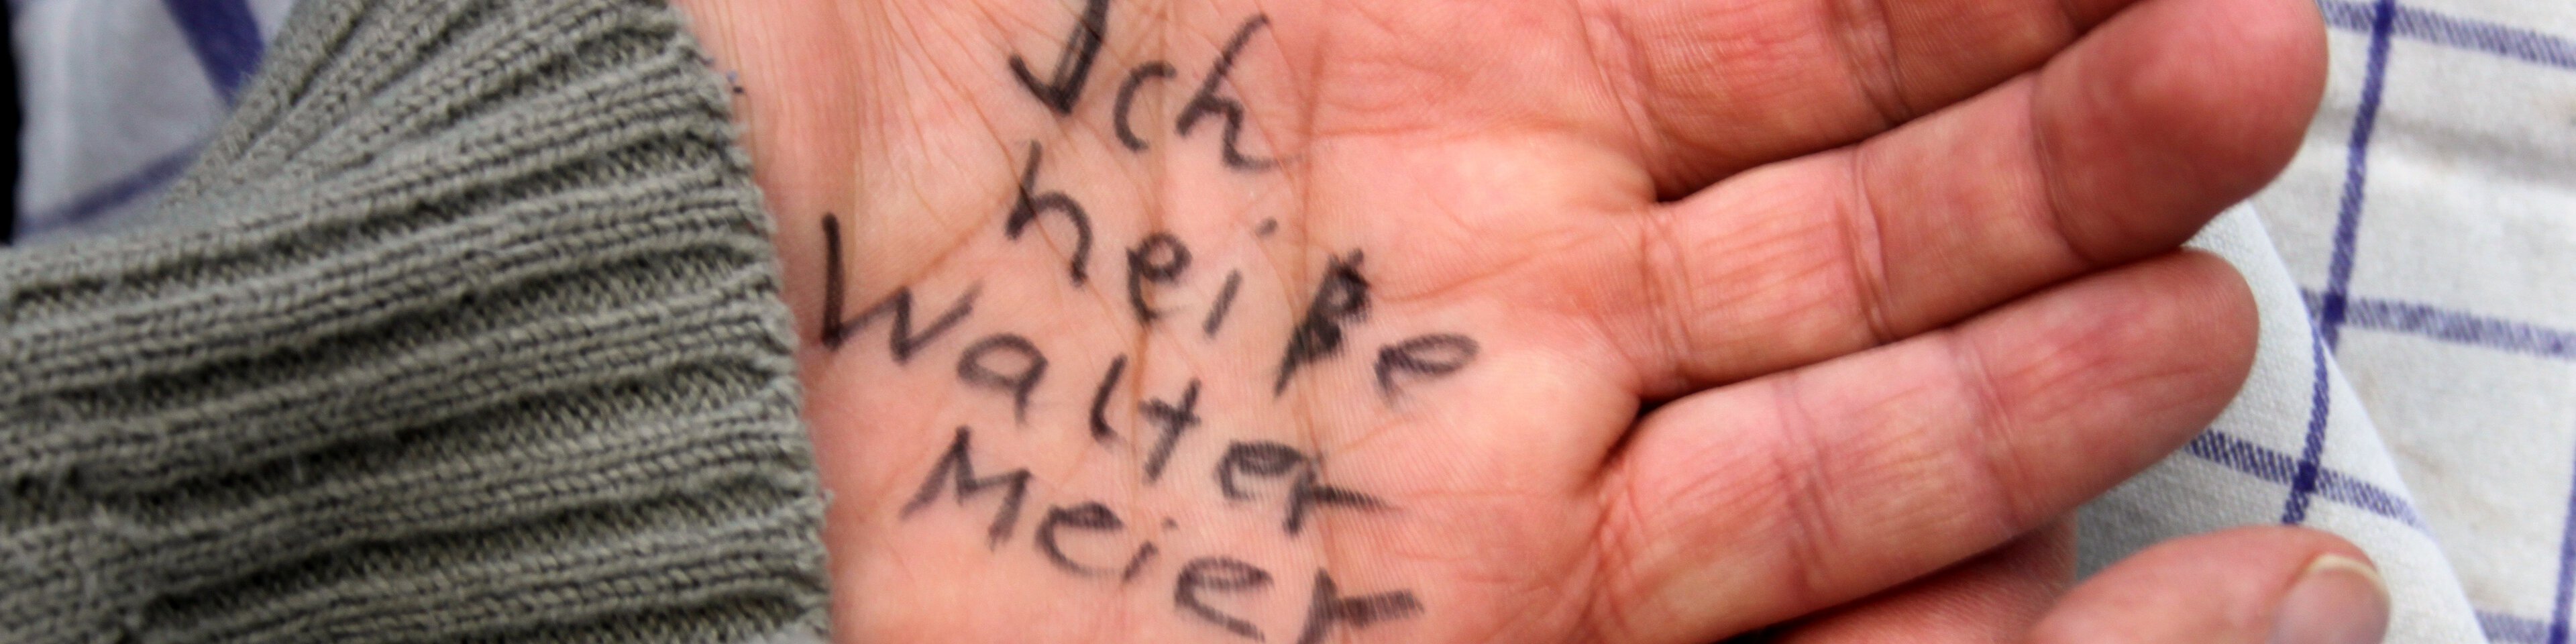 Eine geöffnete Handfläche mit der Aufschrift "Ich heiße Walter Meier" | © Osterland - Fotolia